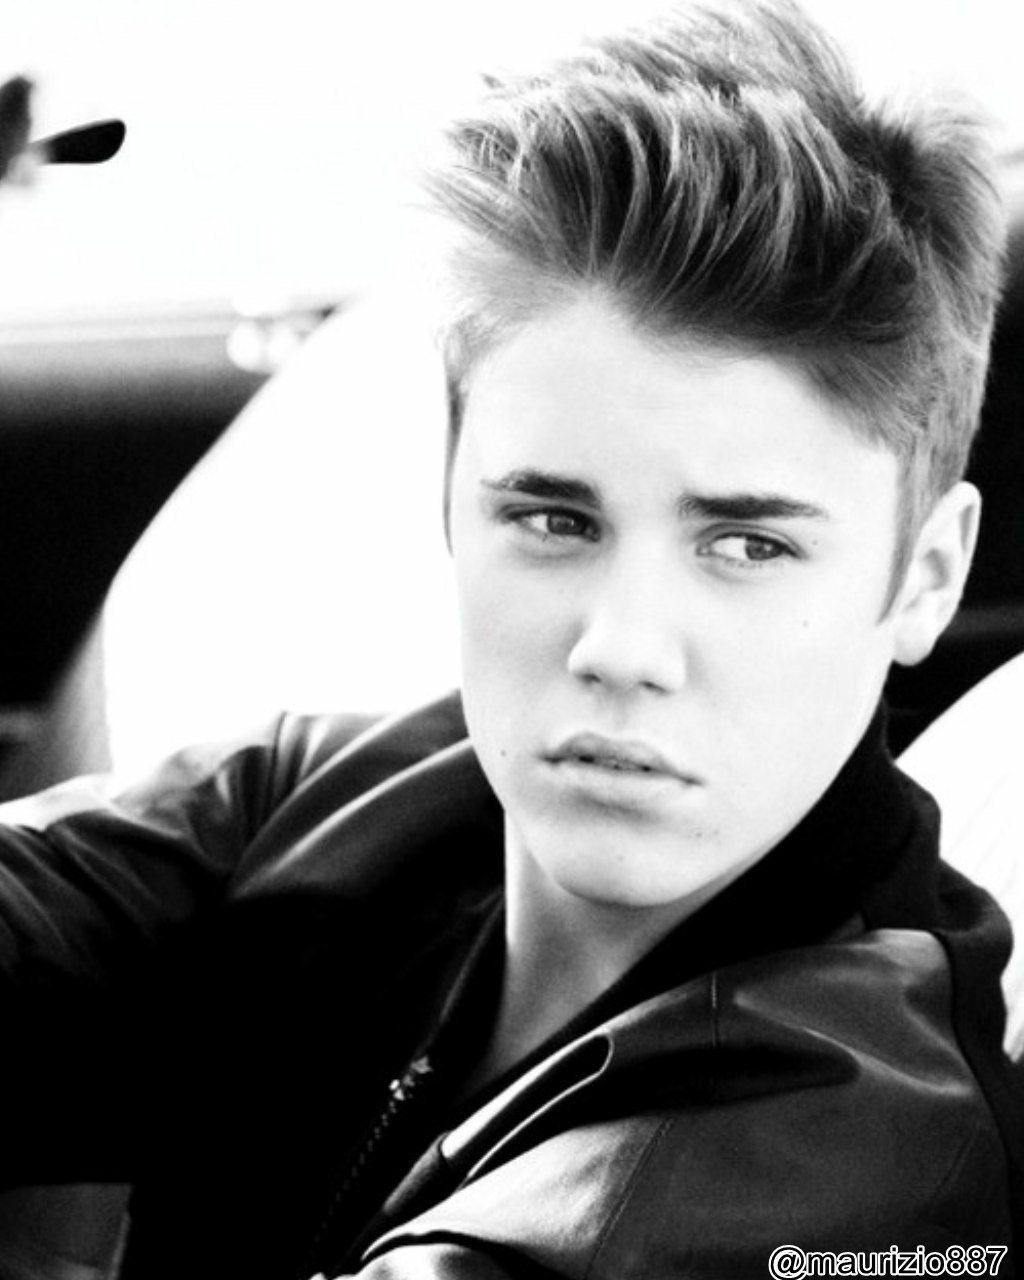 Justin Bieber Wallpapers Believe 2012